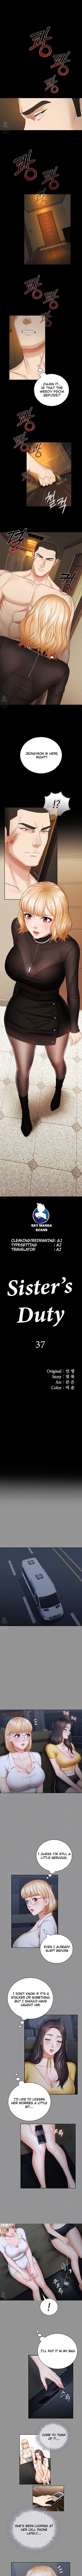 my-sisters-duty-chap-37-0